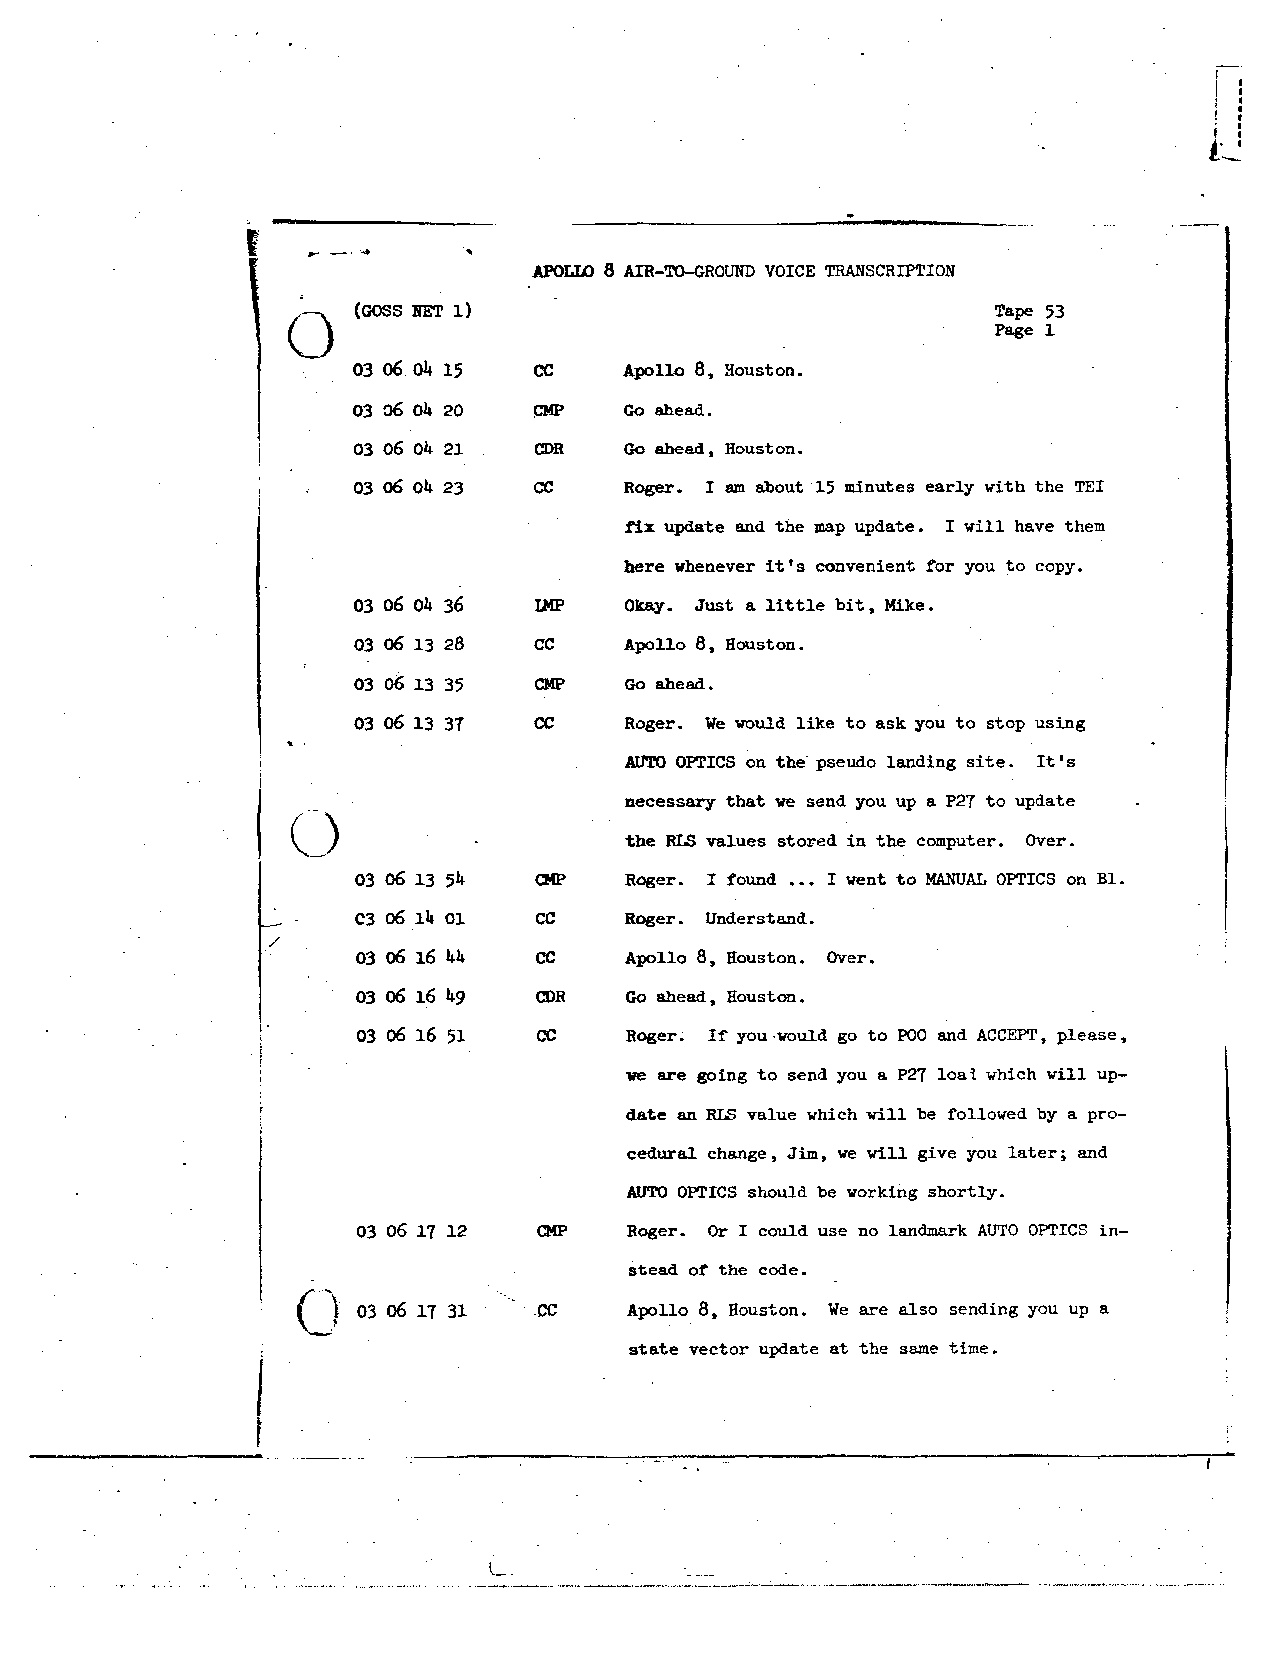 Page 419 of Apollo 8’s original transcript